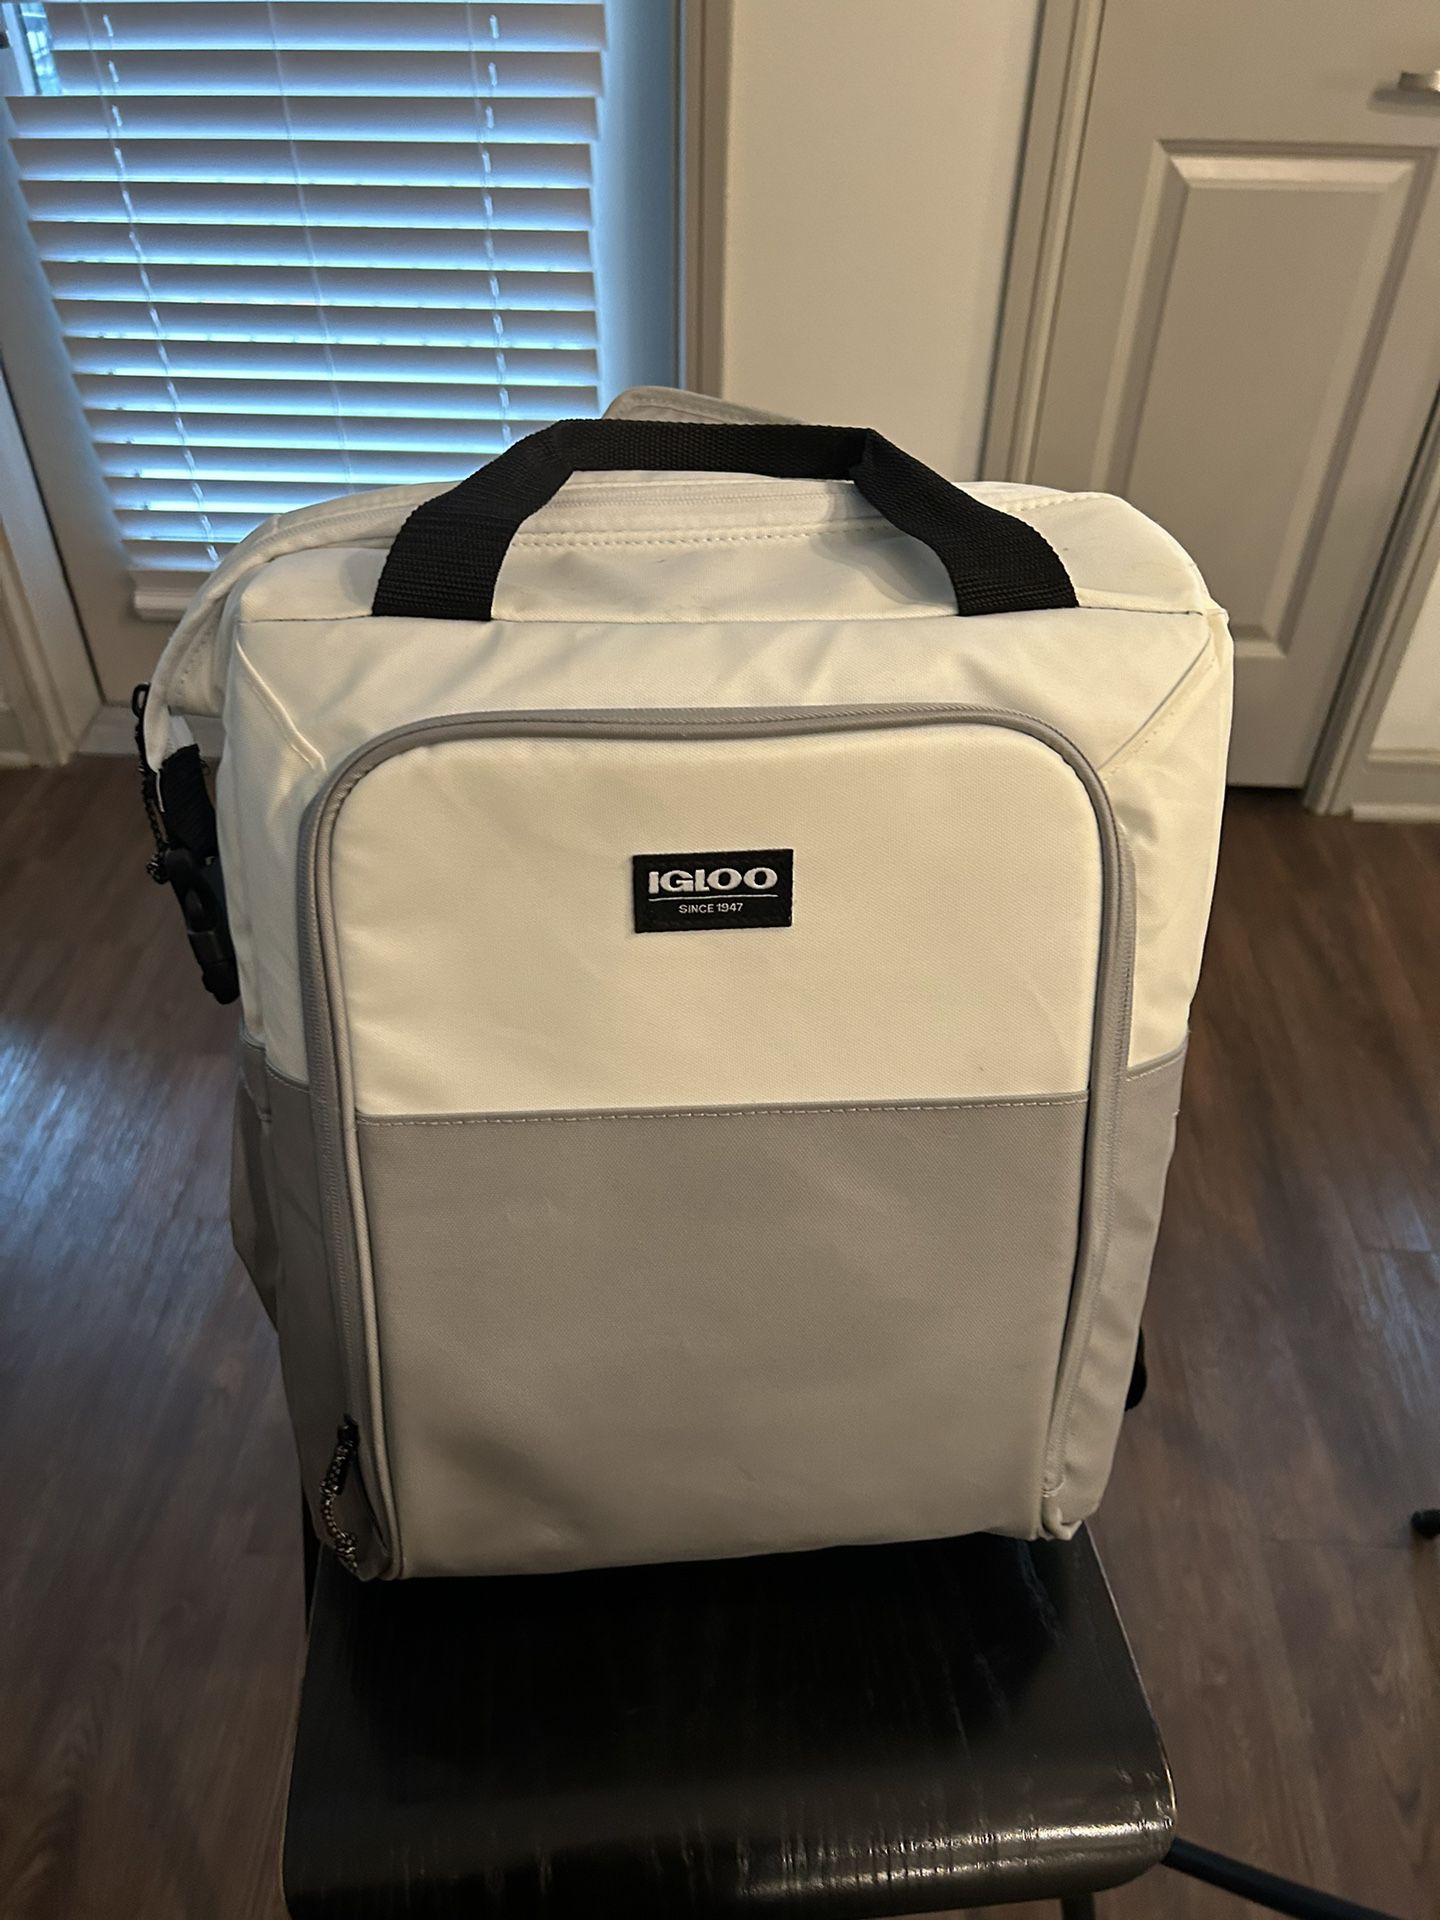 Igloo Backpack Cooler - $20 OBO